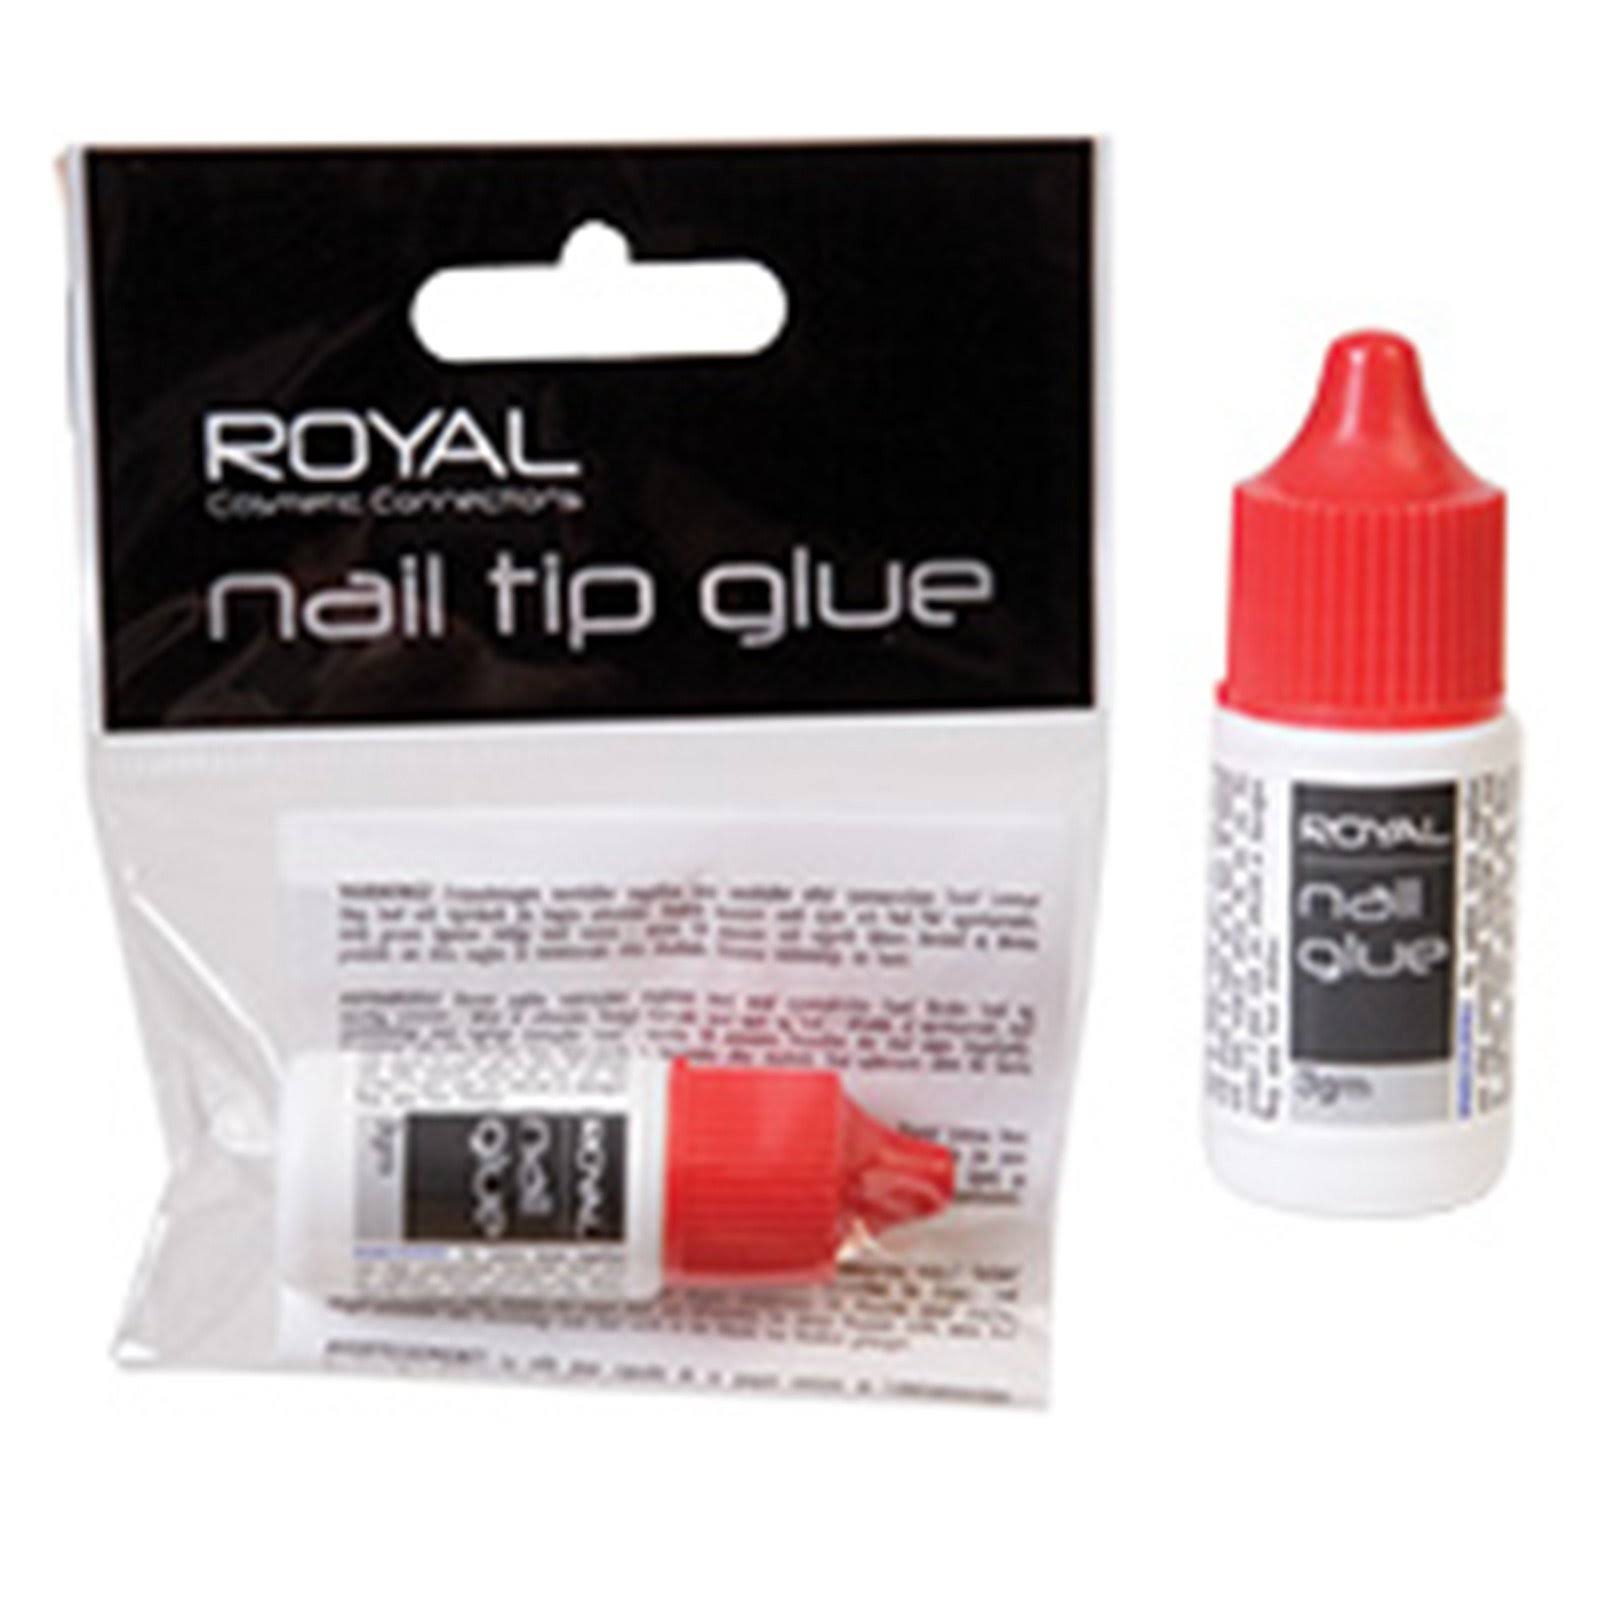 Royal Nail Tip Glue